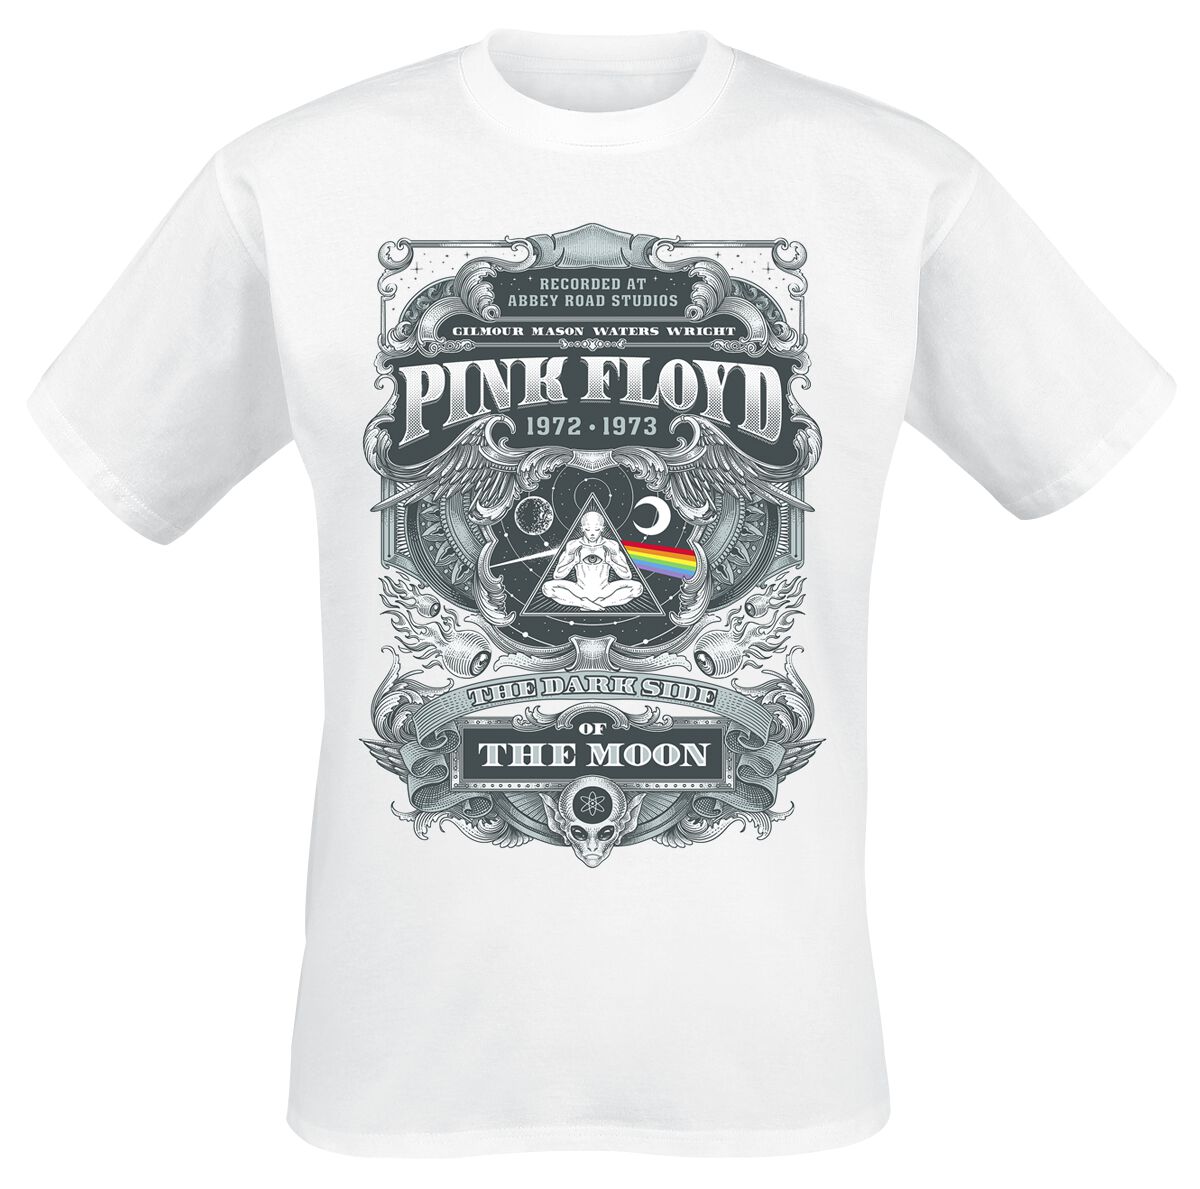 Pink Floyd T-Shirt - DSOTM 1972 - S bis 3XL - für Männer - Größe 3XL - weiß  - Lizenziertes Merchandise!